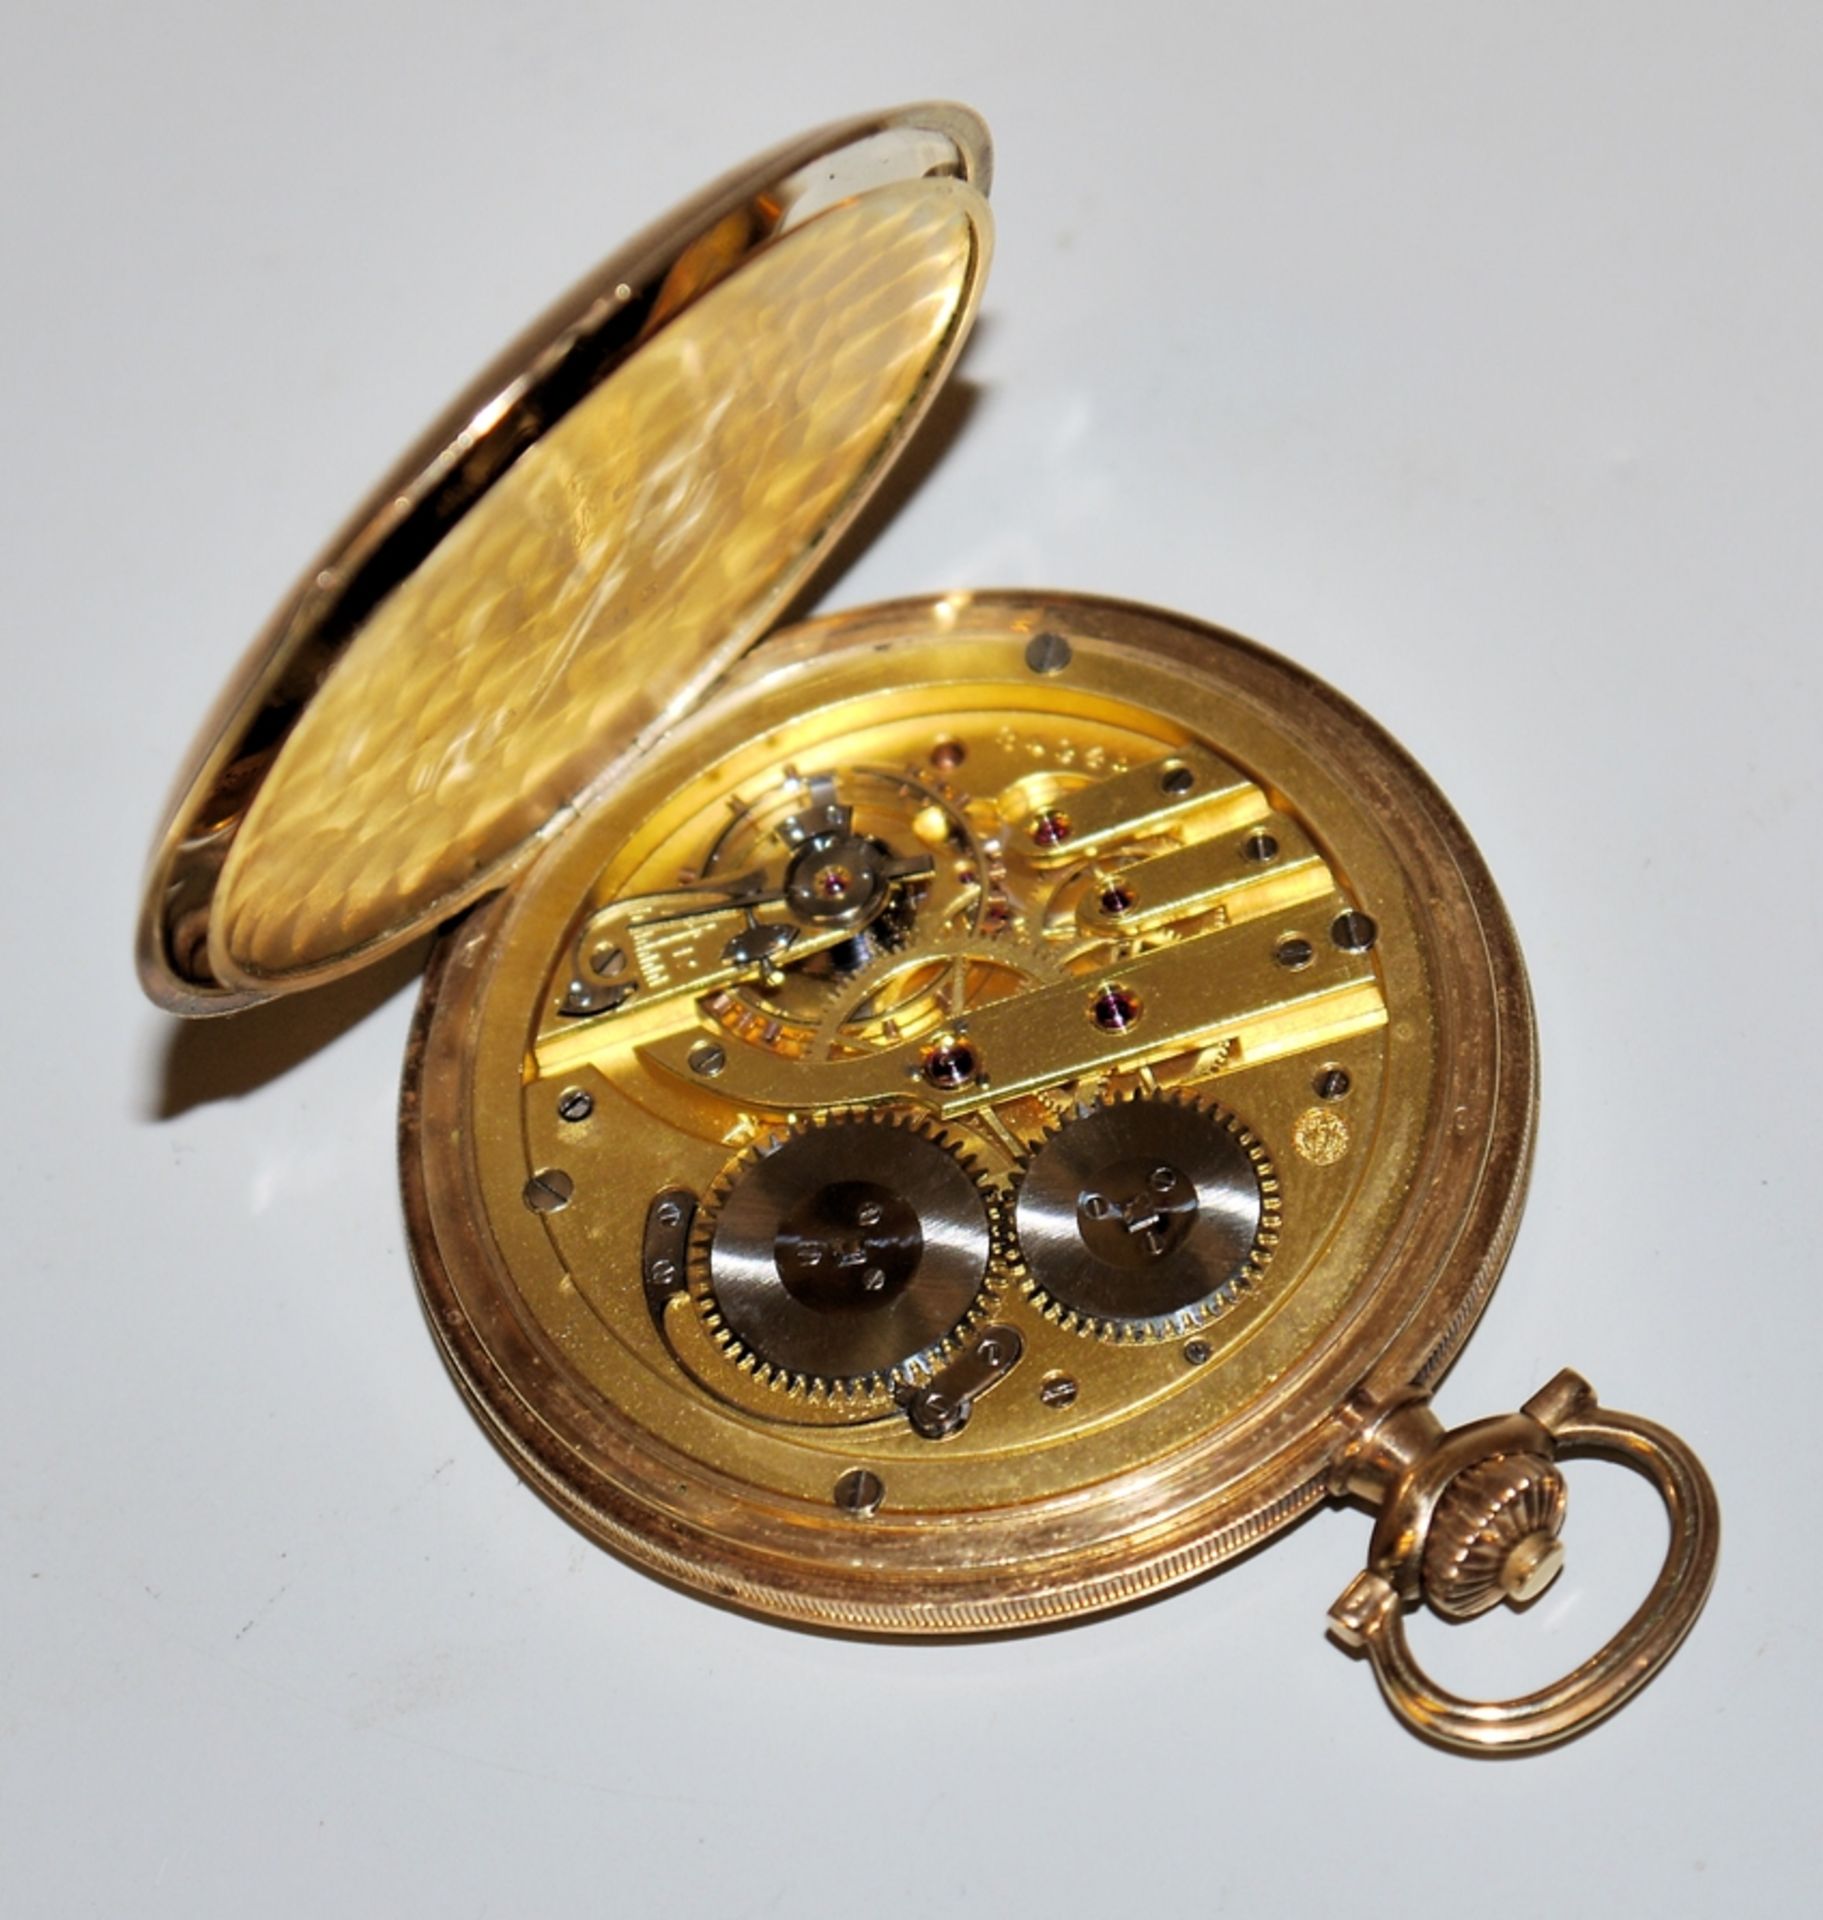 IWC Savonette gold gentleman's pocket watch, Switzerland circa 1925/30, - Image 2 of 3